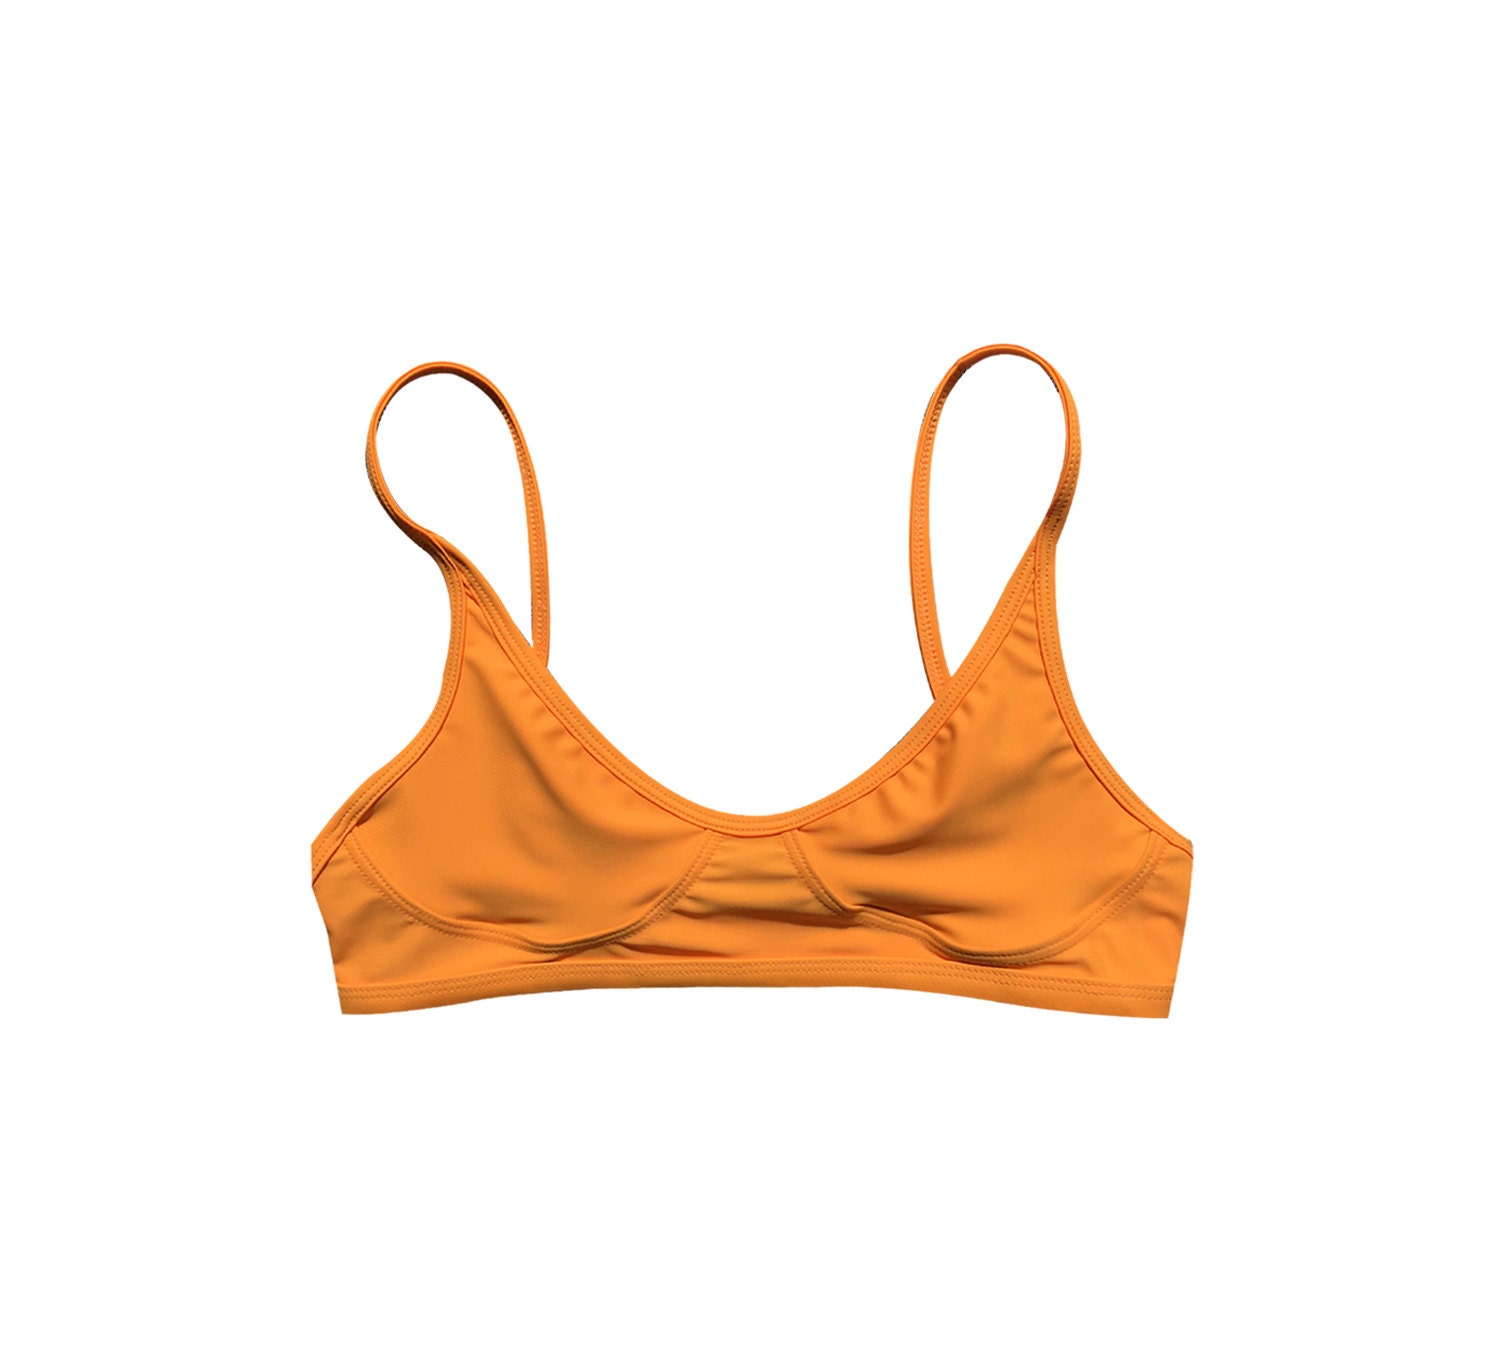 NEW Teardrop Crop Top Solar orange bikini bikini by GNASHswim